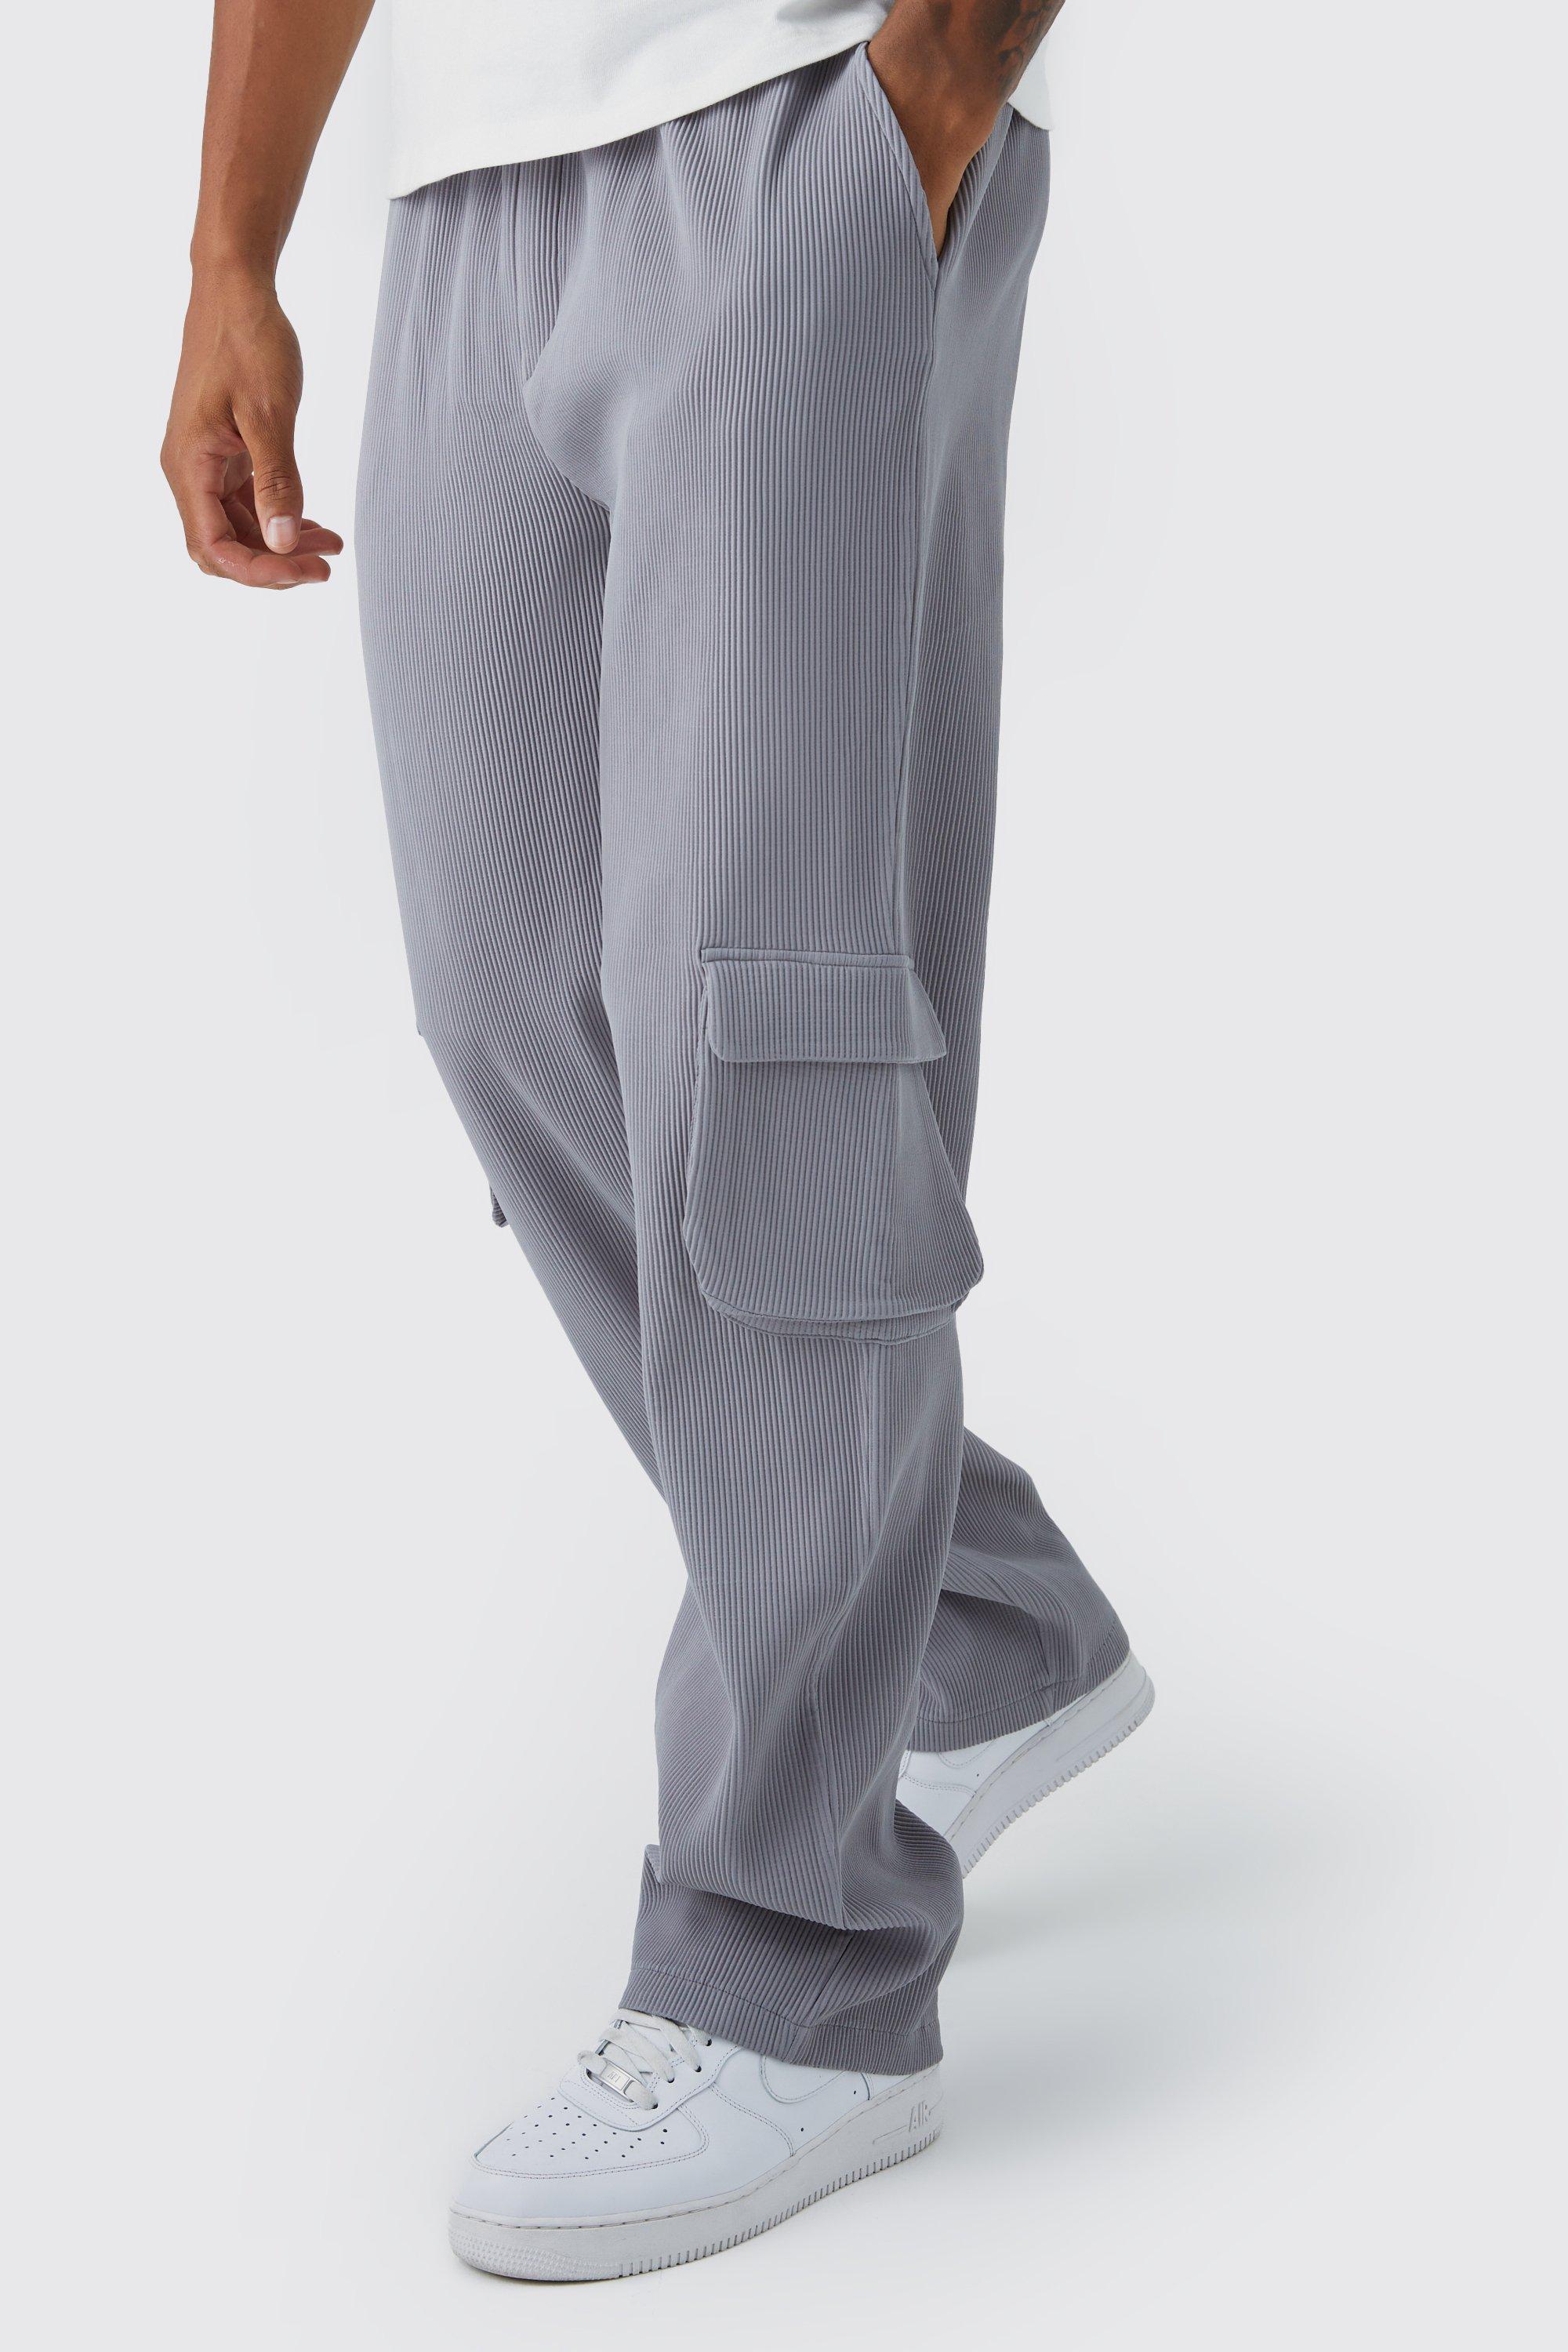 tall - pantalon cargo plissé à taille élastiquée homme - gris - xxl, gris